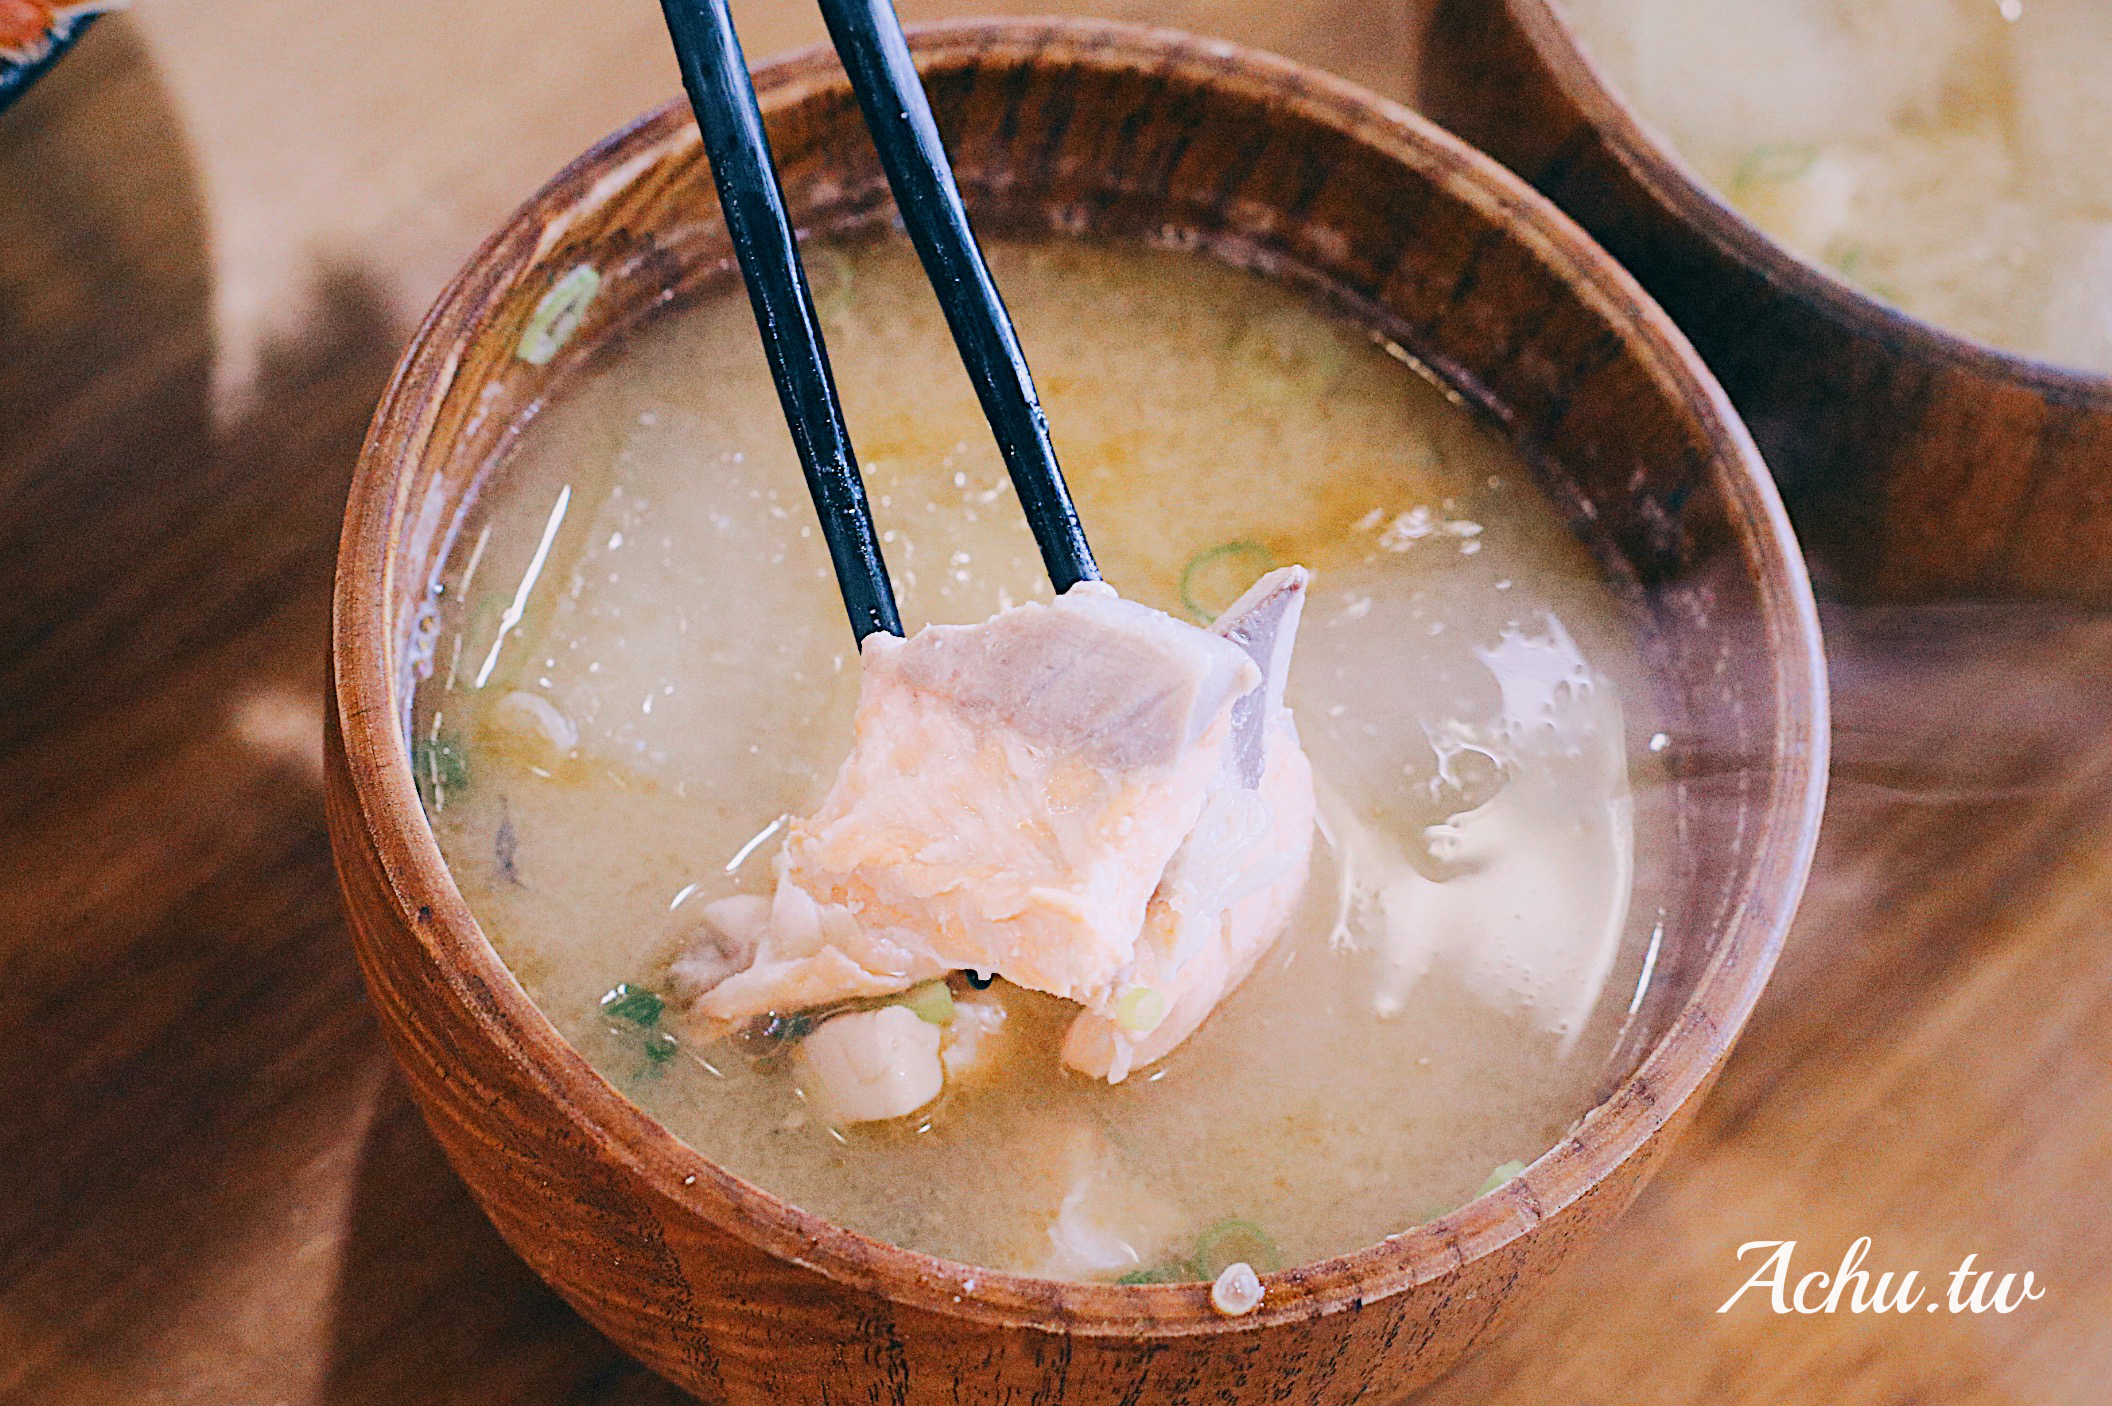 【內湖美食】美川壽司mikawa 新鮮食材 一次上癮令人驚豔的海鮮丼飯 (菜單)